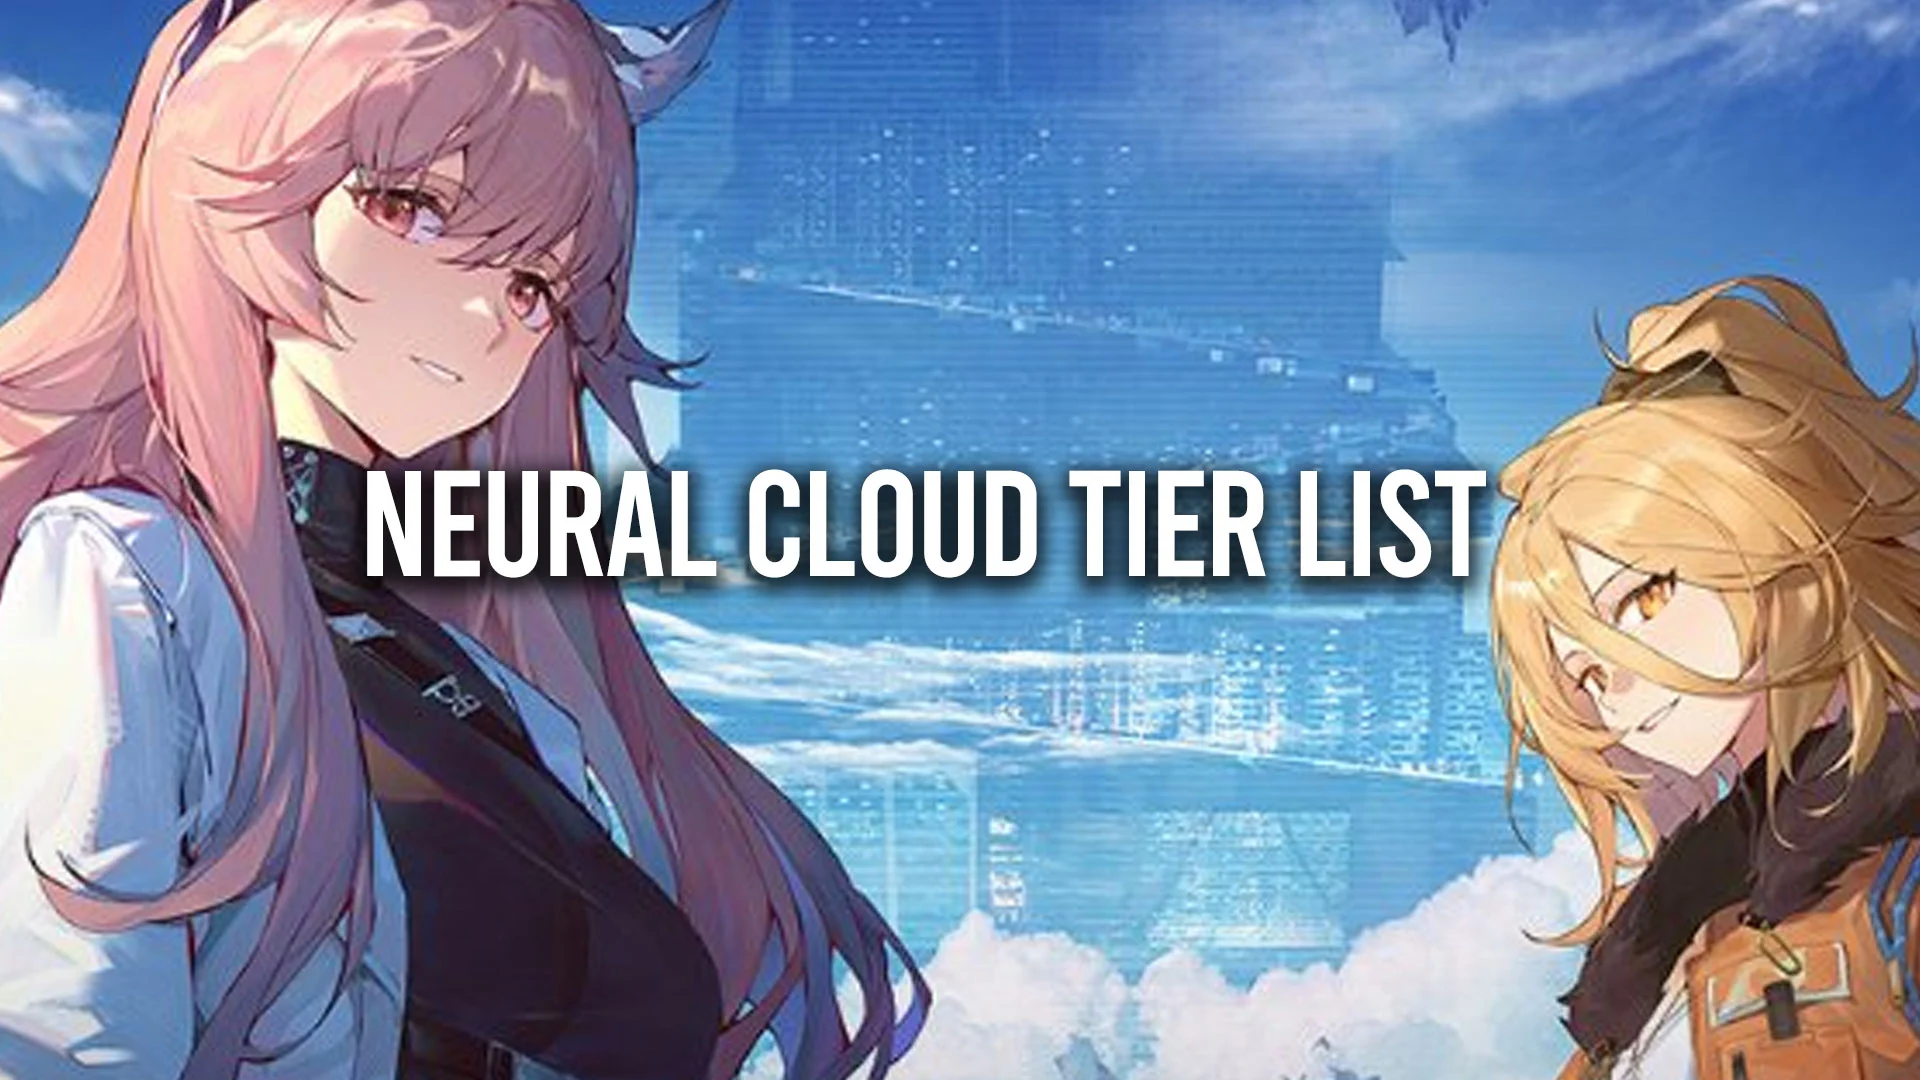 Neural Cloud Tier List